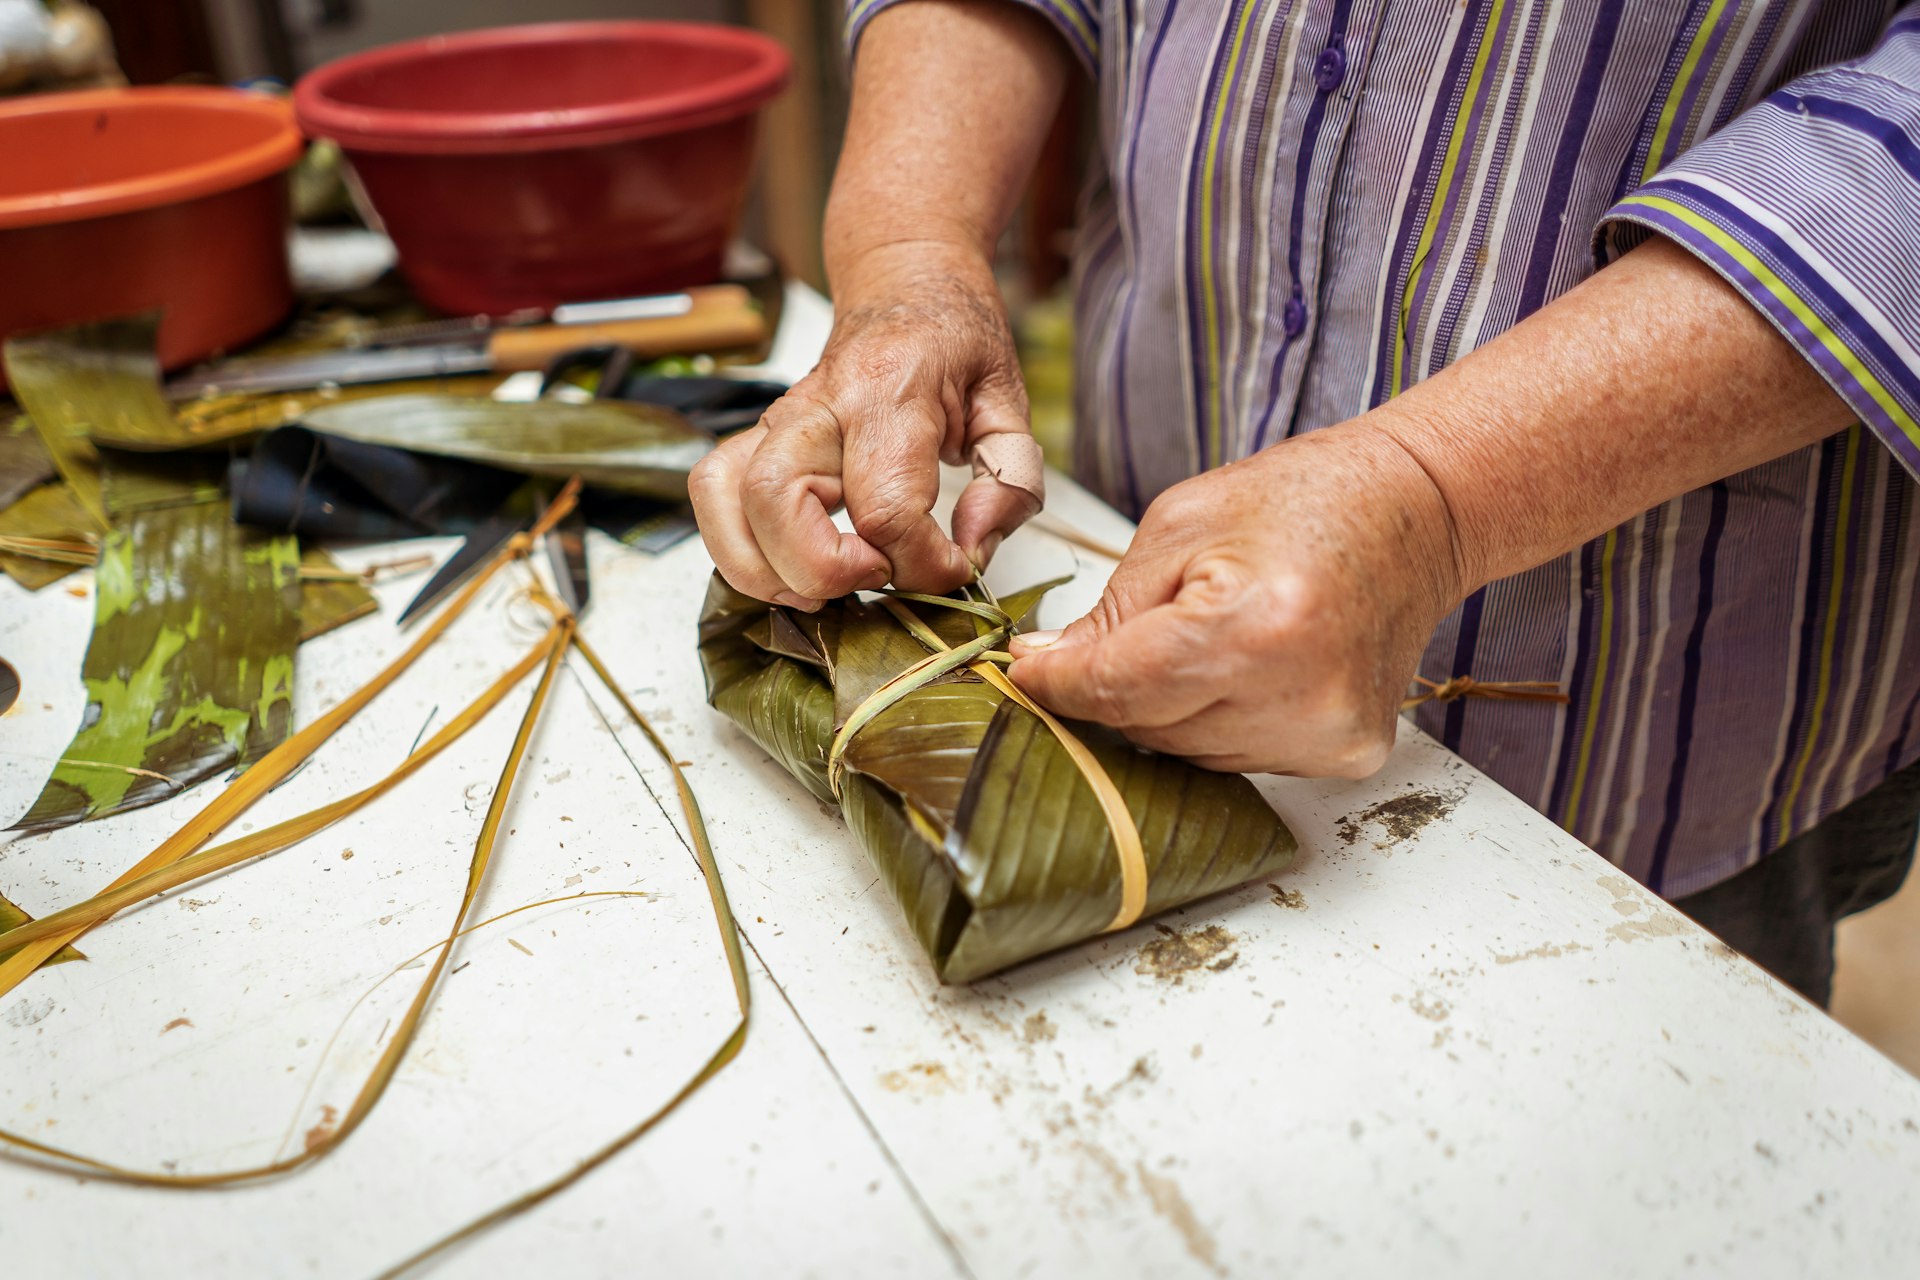 A shot of man hands as he works on handicrafts in Tegucigalpa, Honduras, Central America